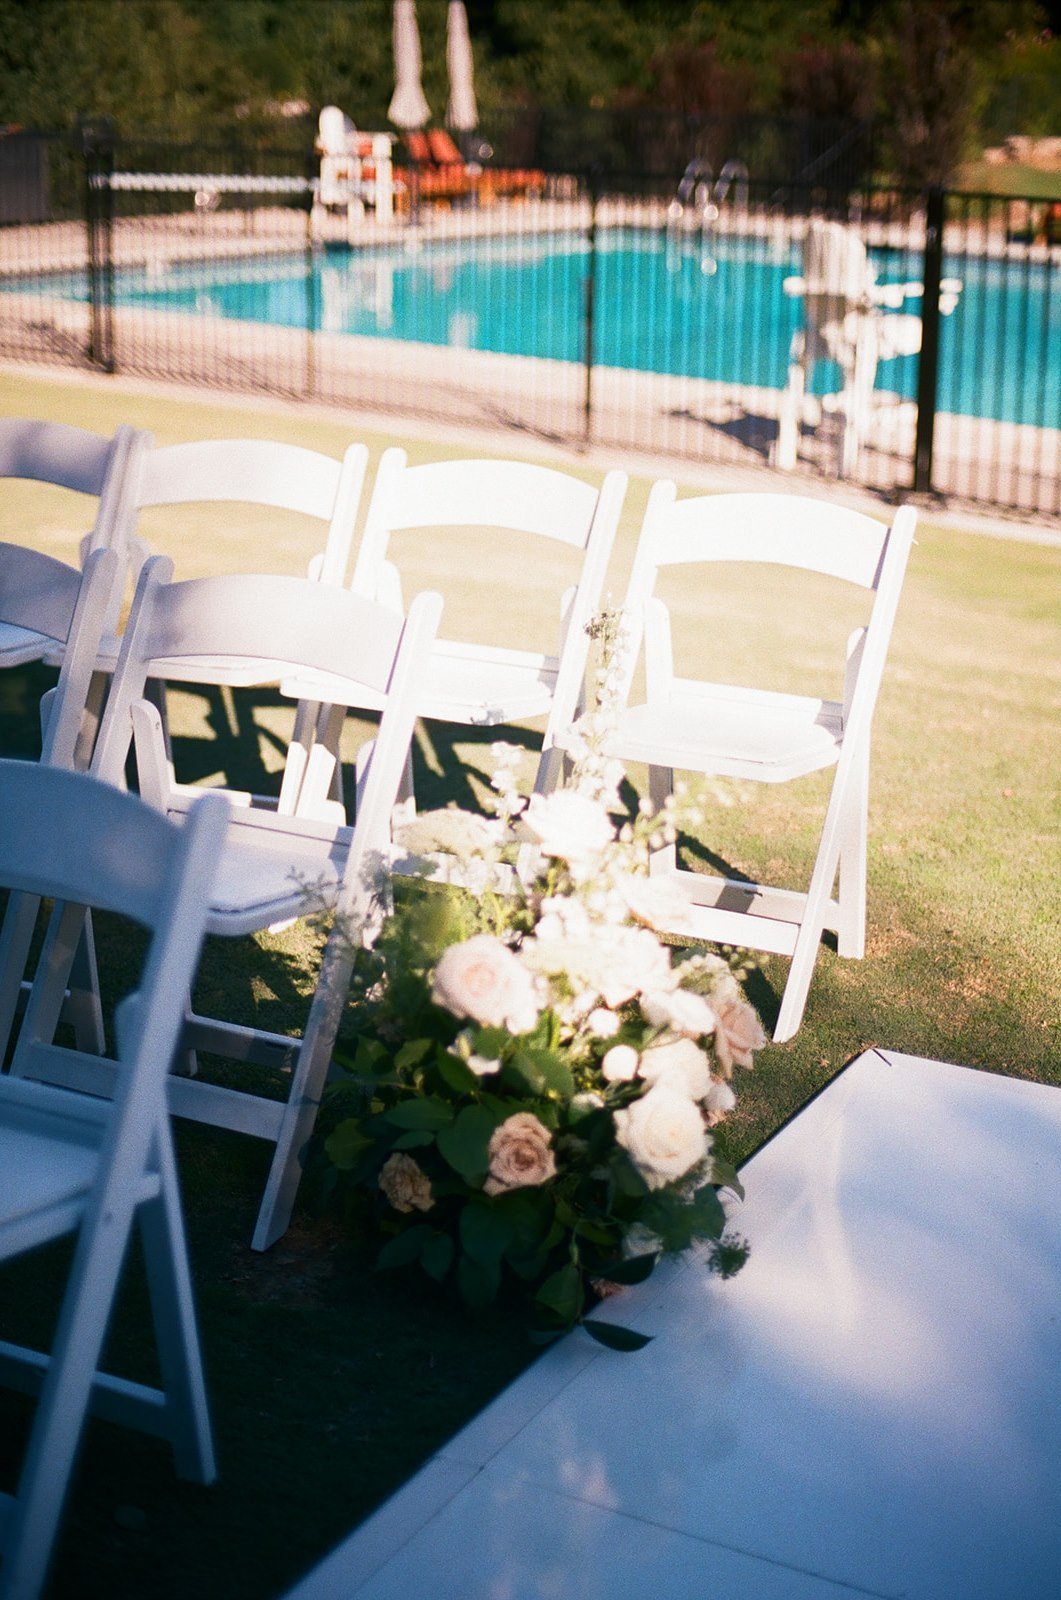 Romantic wedding details and floral arrangements